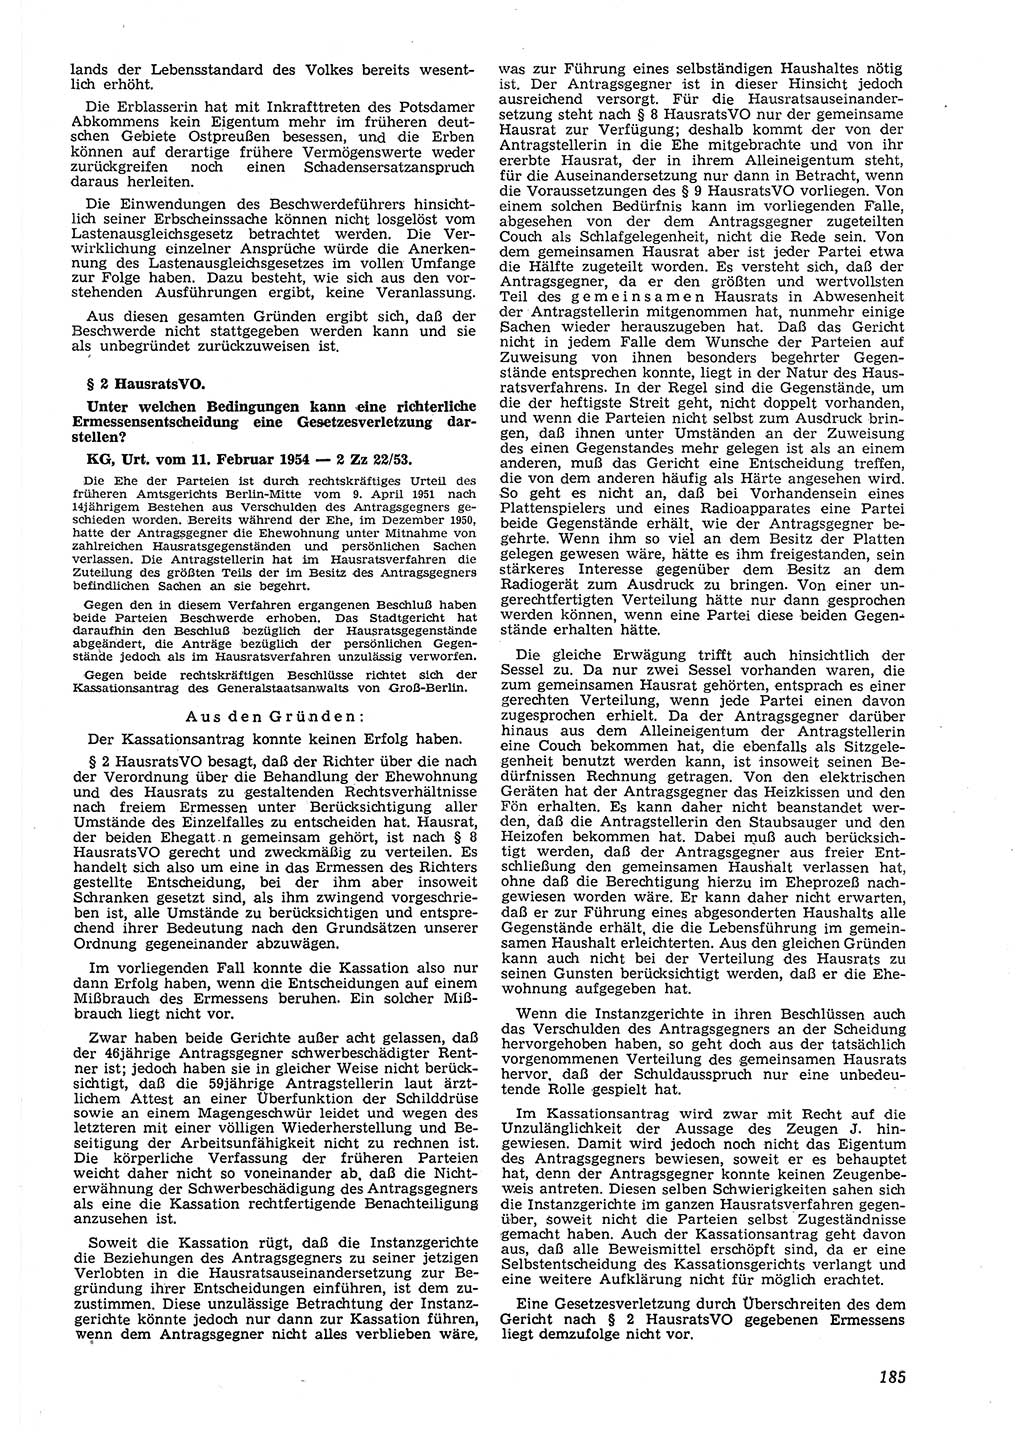 Neue Justiz (NJ), Zeitschrift für Recht und Rechtswissenschaft [Deutsche Demokratische Republik (DDR)], 8. Jahrgang 1954, Seite 185 (NJ DDR 1954, S. 185)